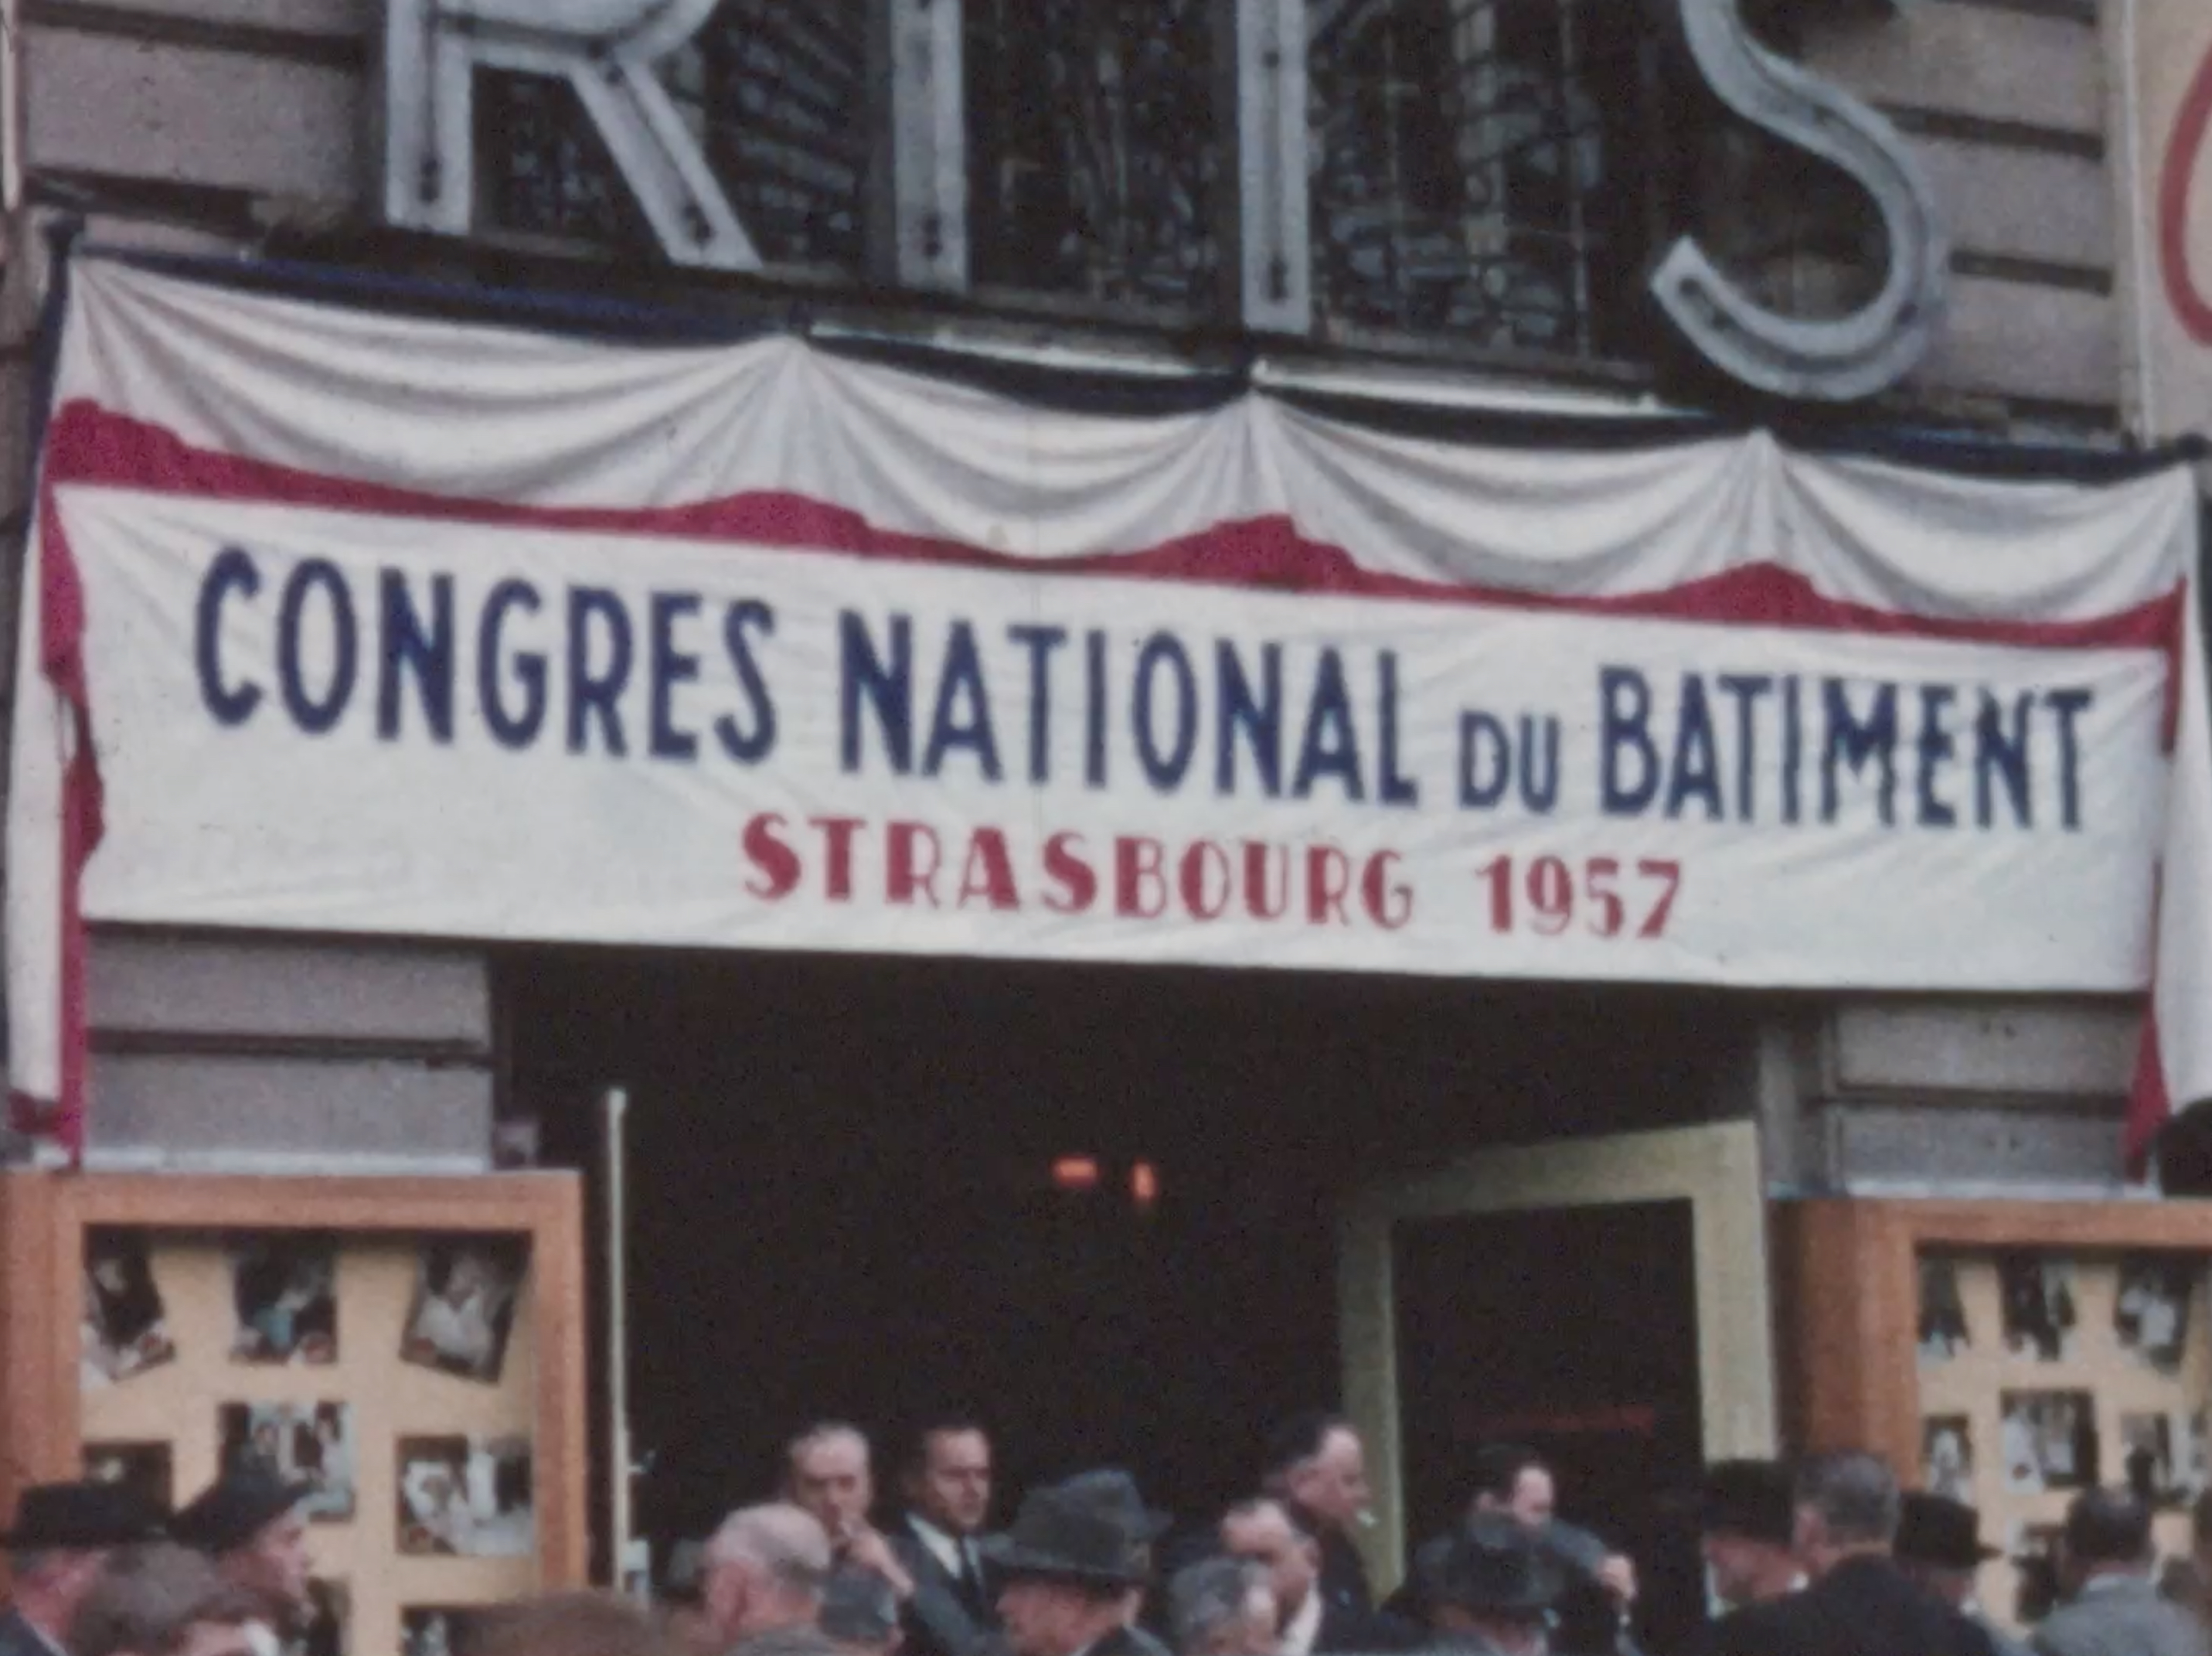 Congrès national du bâtiment à Strasbourg